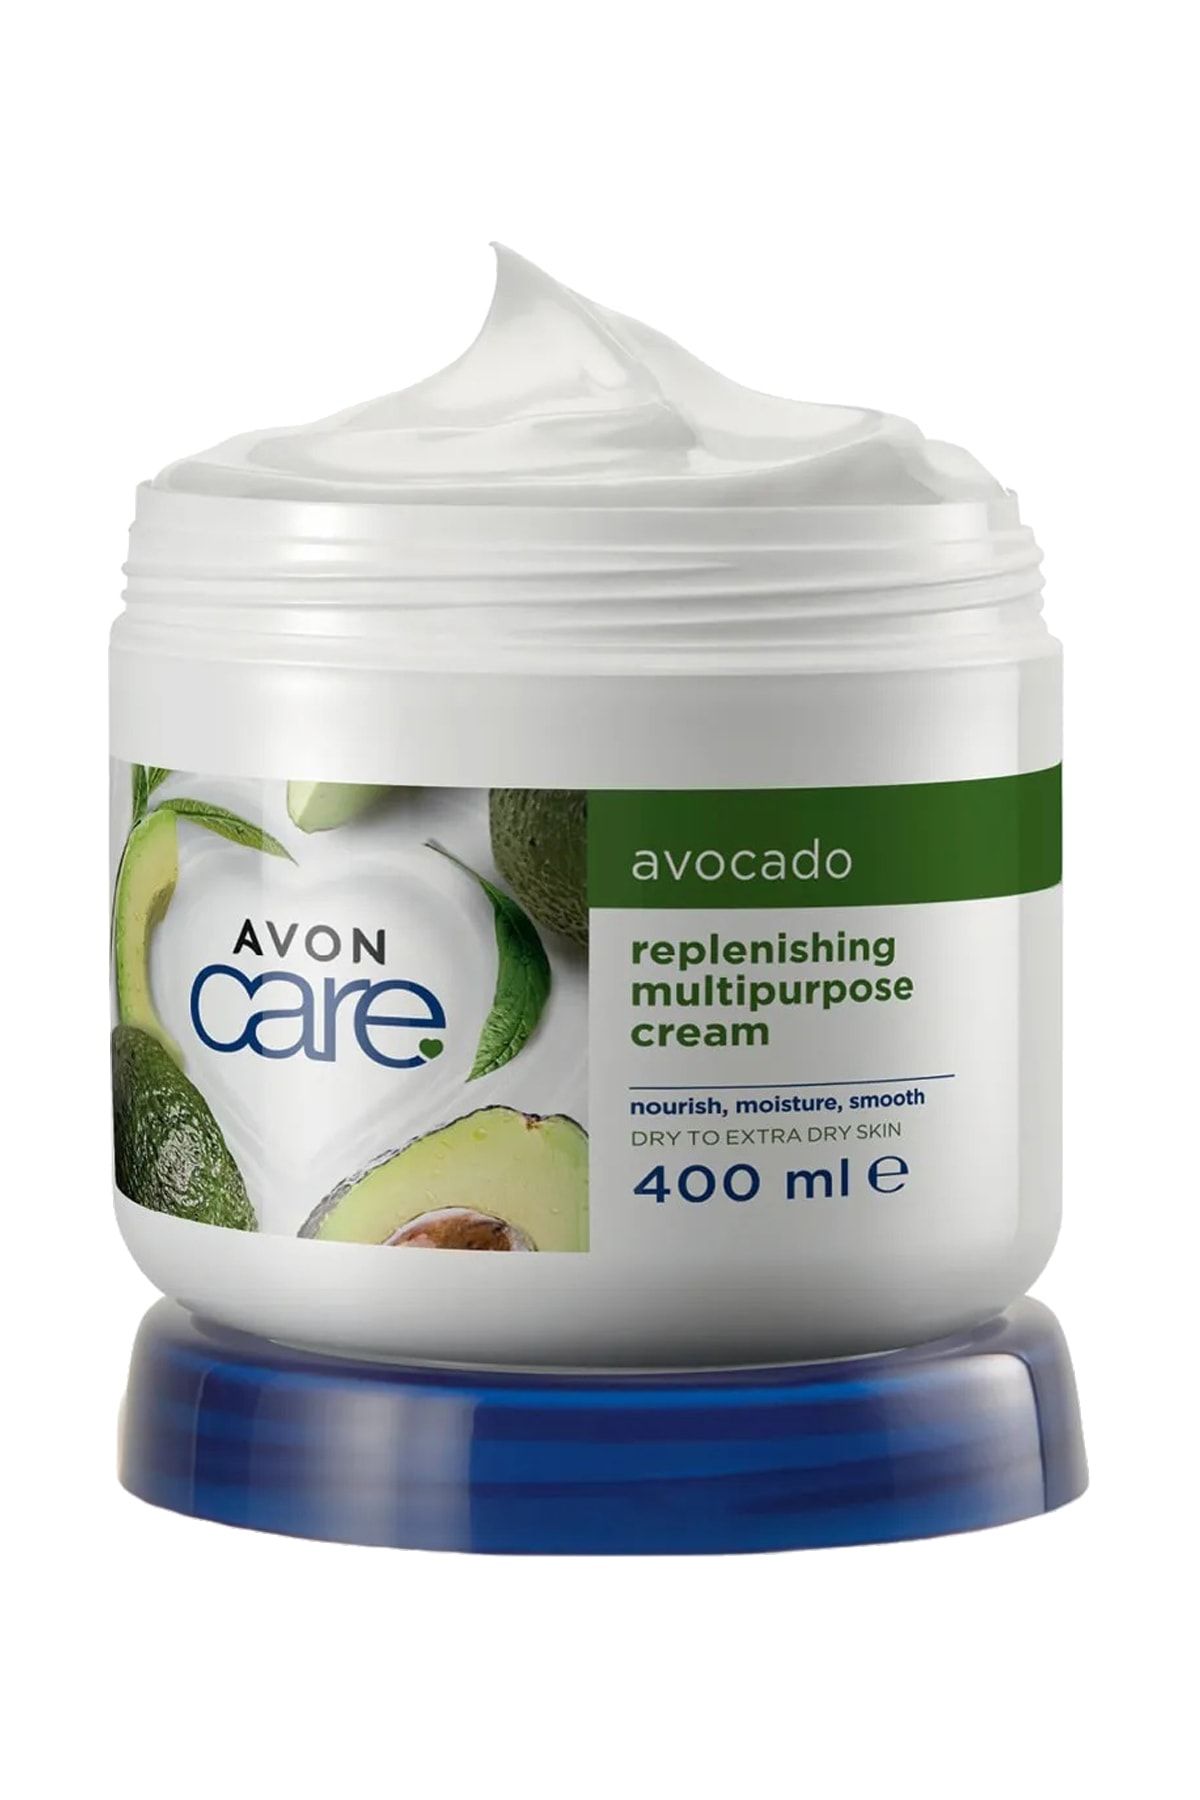 Avon Care Kuru Ciltler İçin Avokado Özlü Çok Amaçlı Krem 400 Ml.